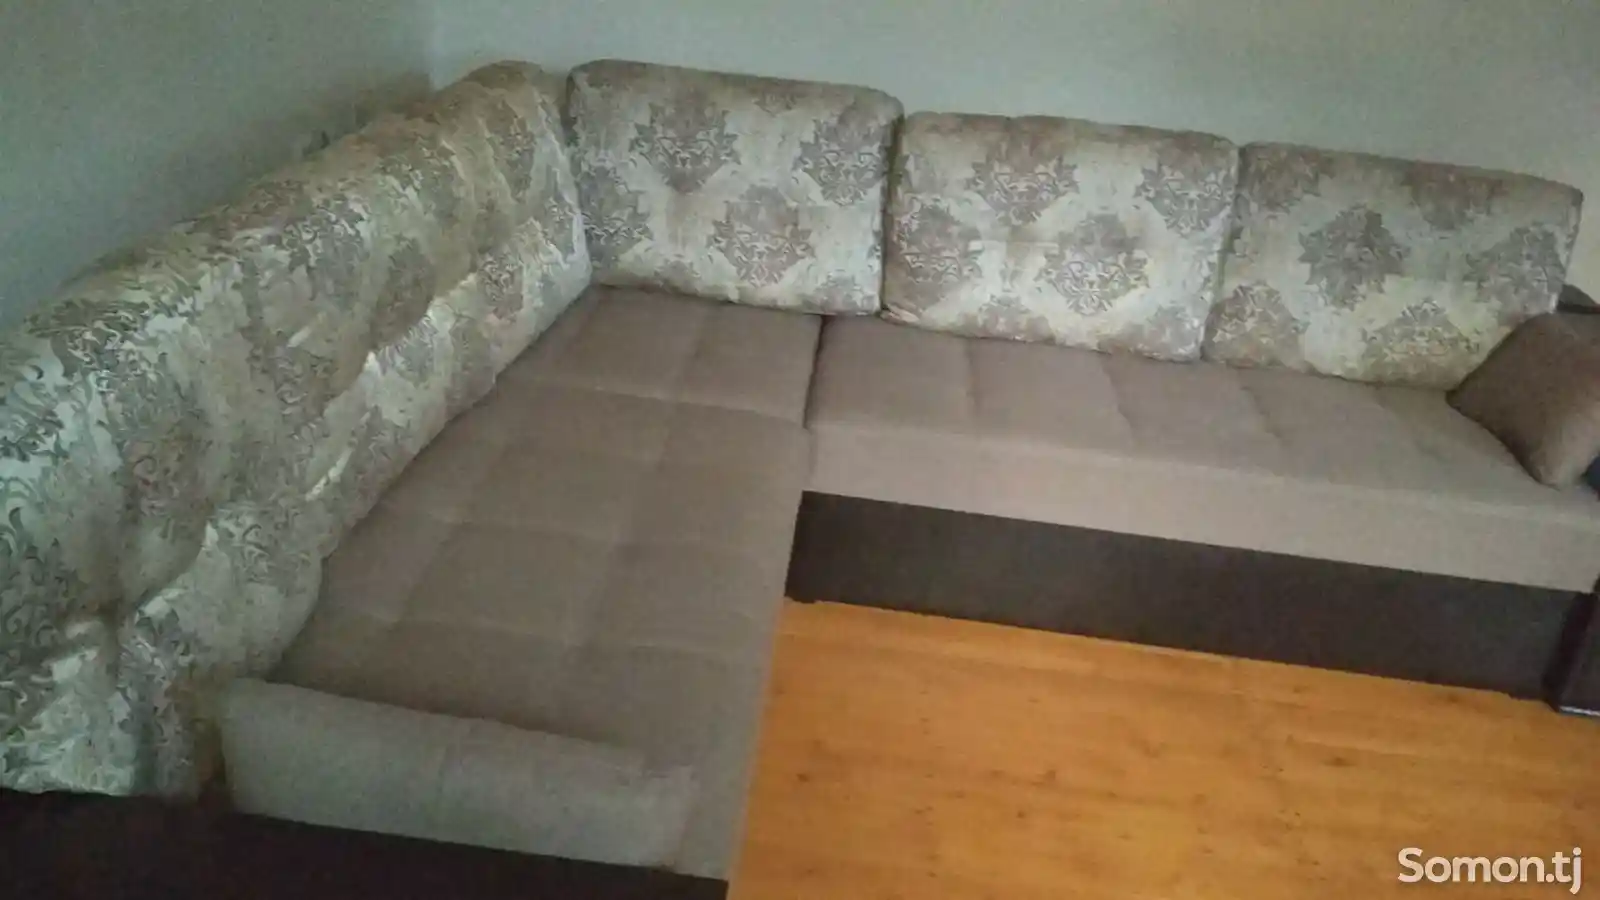 Уголок диван-2